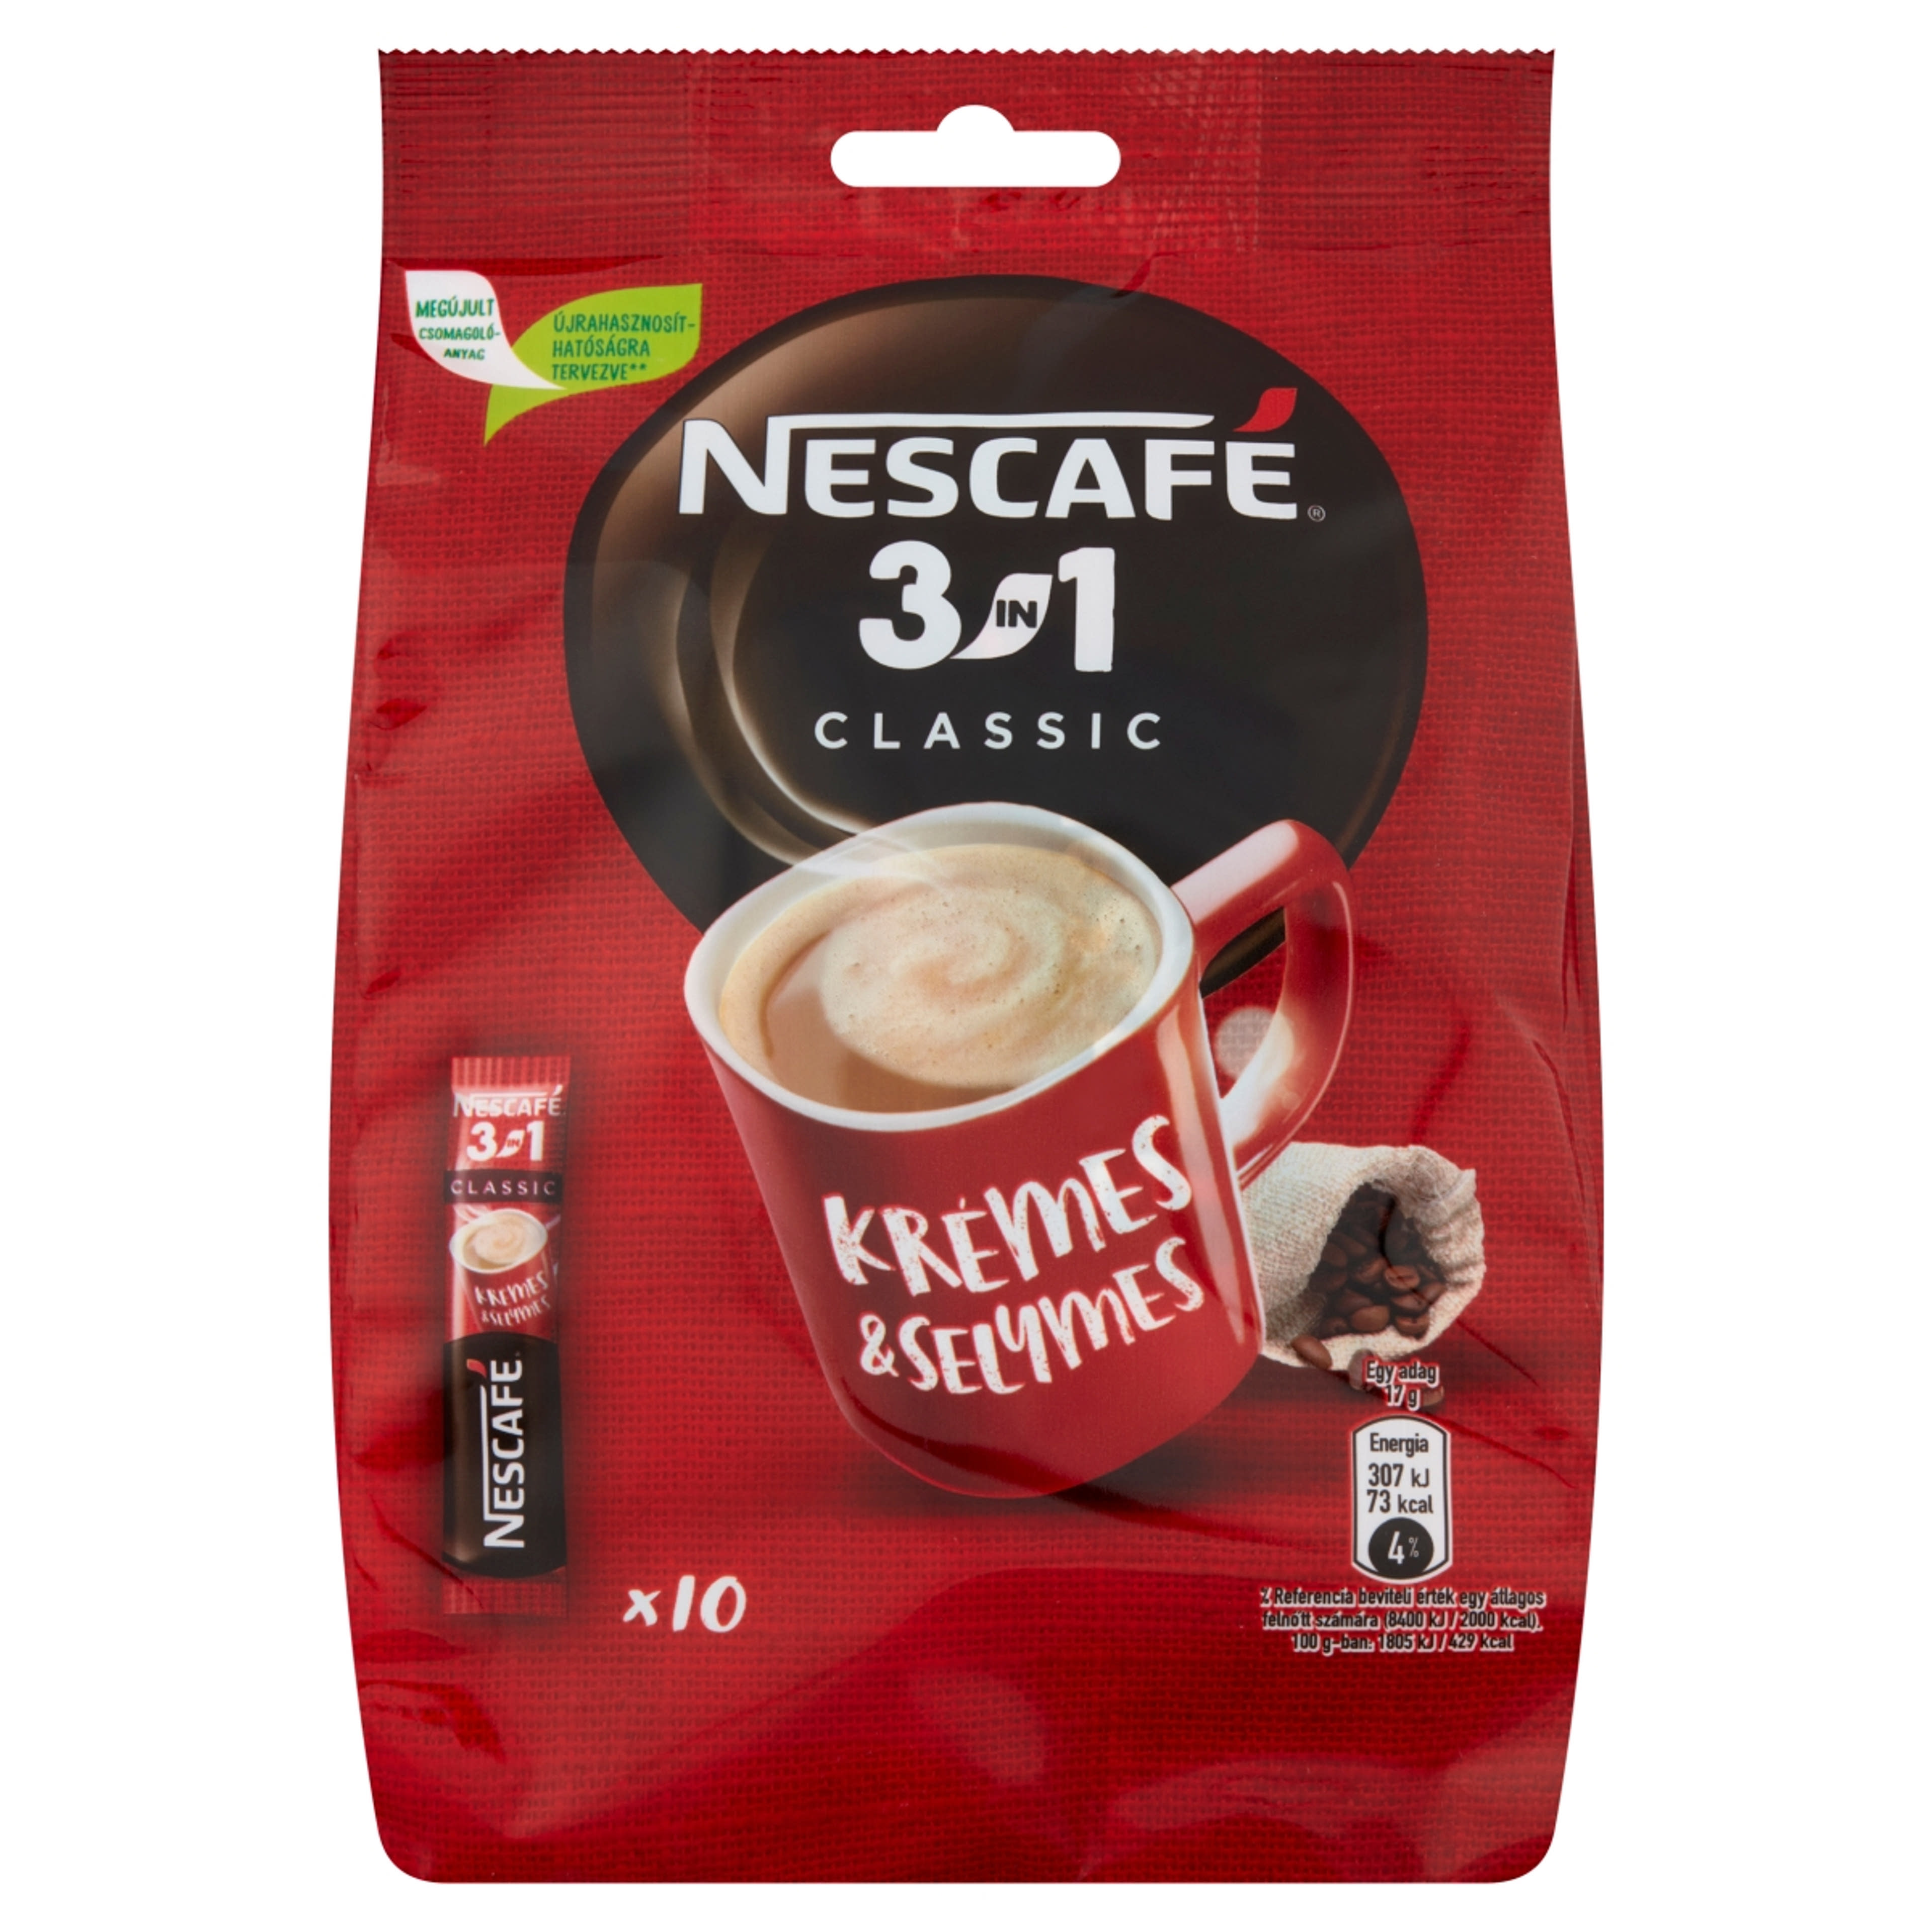 Nescafe 3in1 10*17 g - 170 g